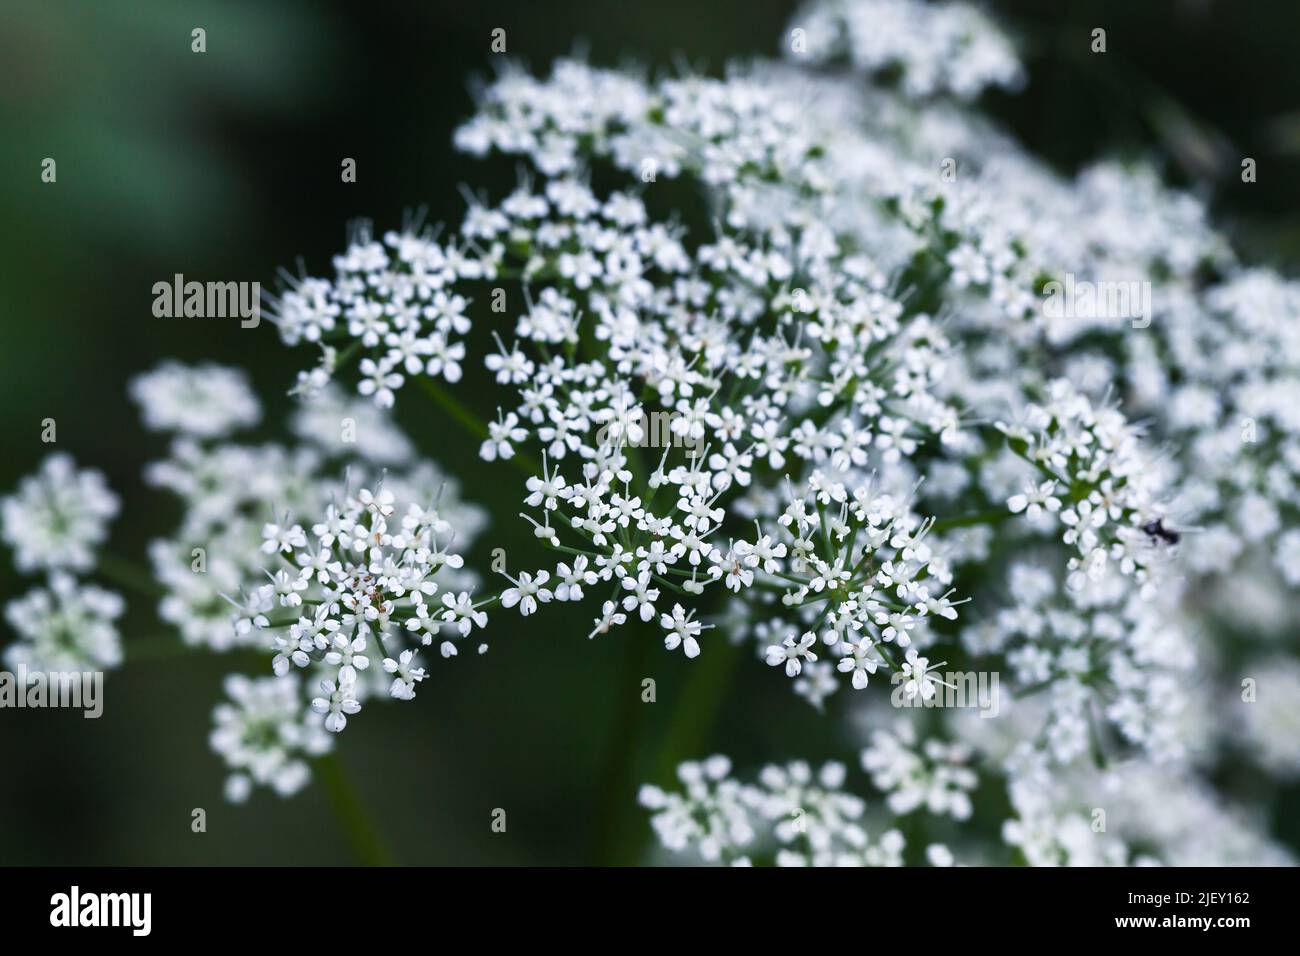 Weiße Blüten von Apiaceae oder Umbelliferae, Familie von meist aromatischen Blütenpflanzen, die nach der Typus-Gattung Apium benannt und allgemein als keller bekannt sind Stockfoto